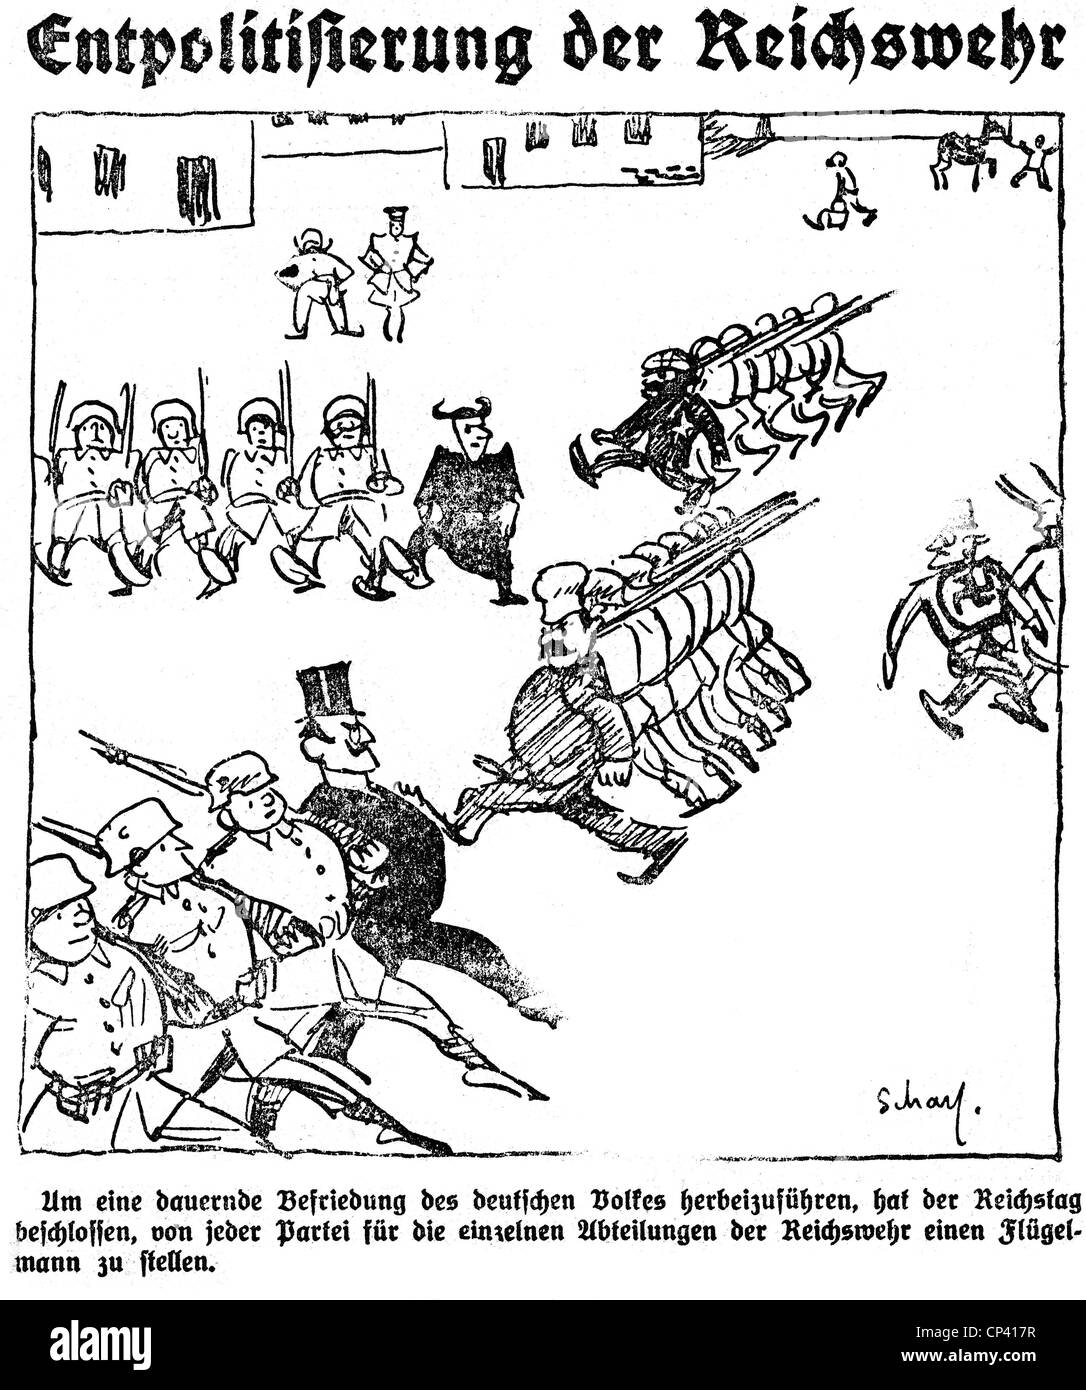 Militär, Deutschland, Karikatur, 'die Reichswehr entgolten', Zeichnung von scharf, 'Welt am Sonntag', 5.1.1926, Zusatz-Rechte-Clearences-nicht vorhanden Stockfoto